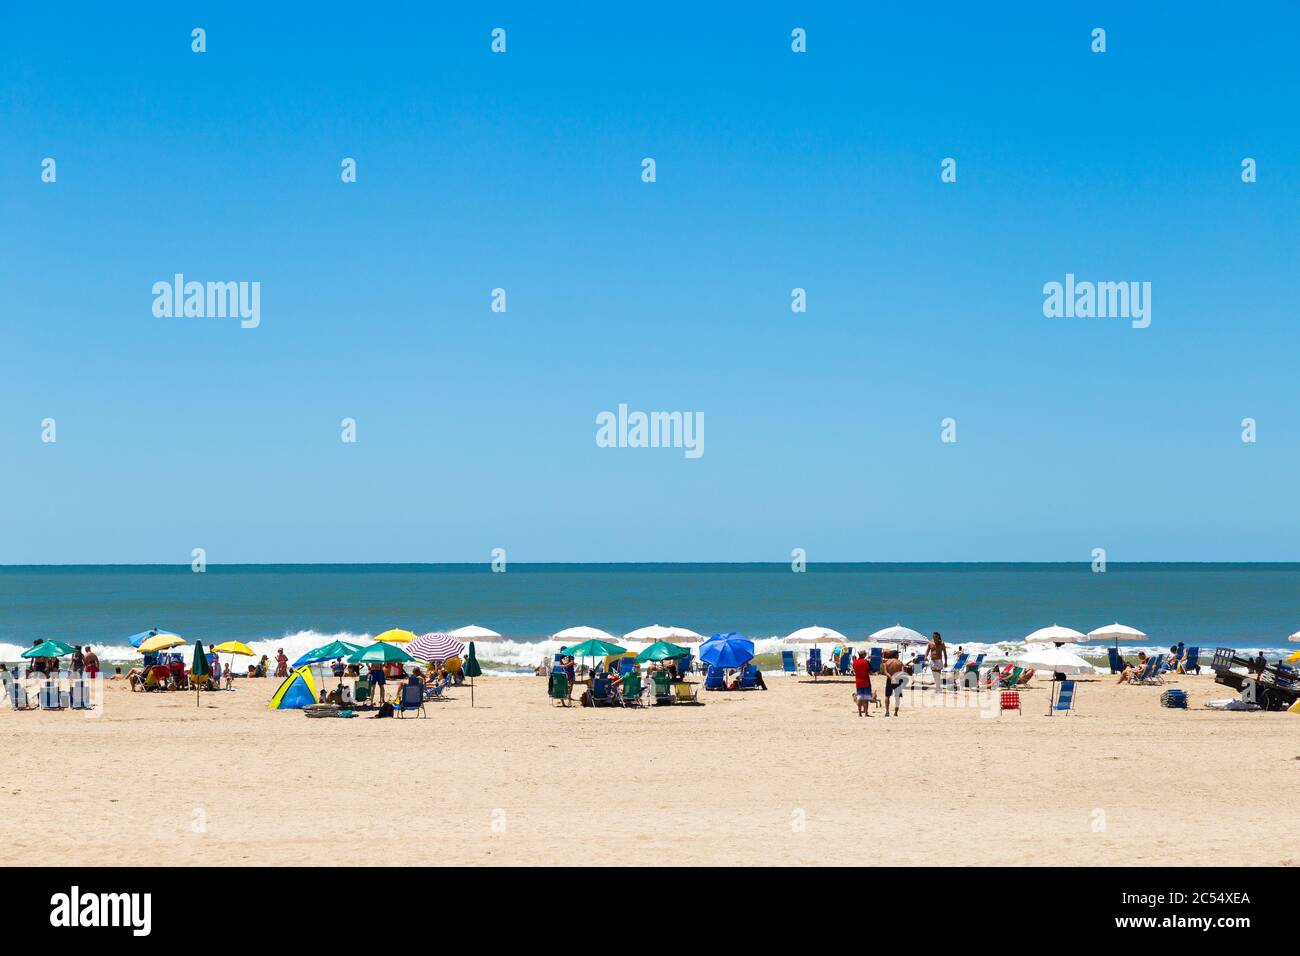 Vista de la vida de la playa. Composición de diseño plano para fondo. Soleado día de verano en la costa sur del atlántico. Espacio de copia. MAR DE LAS PAMPAS, ARGENTINA Foto de stock